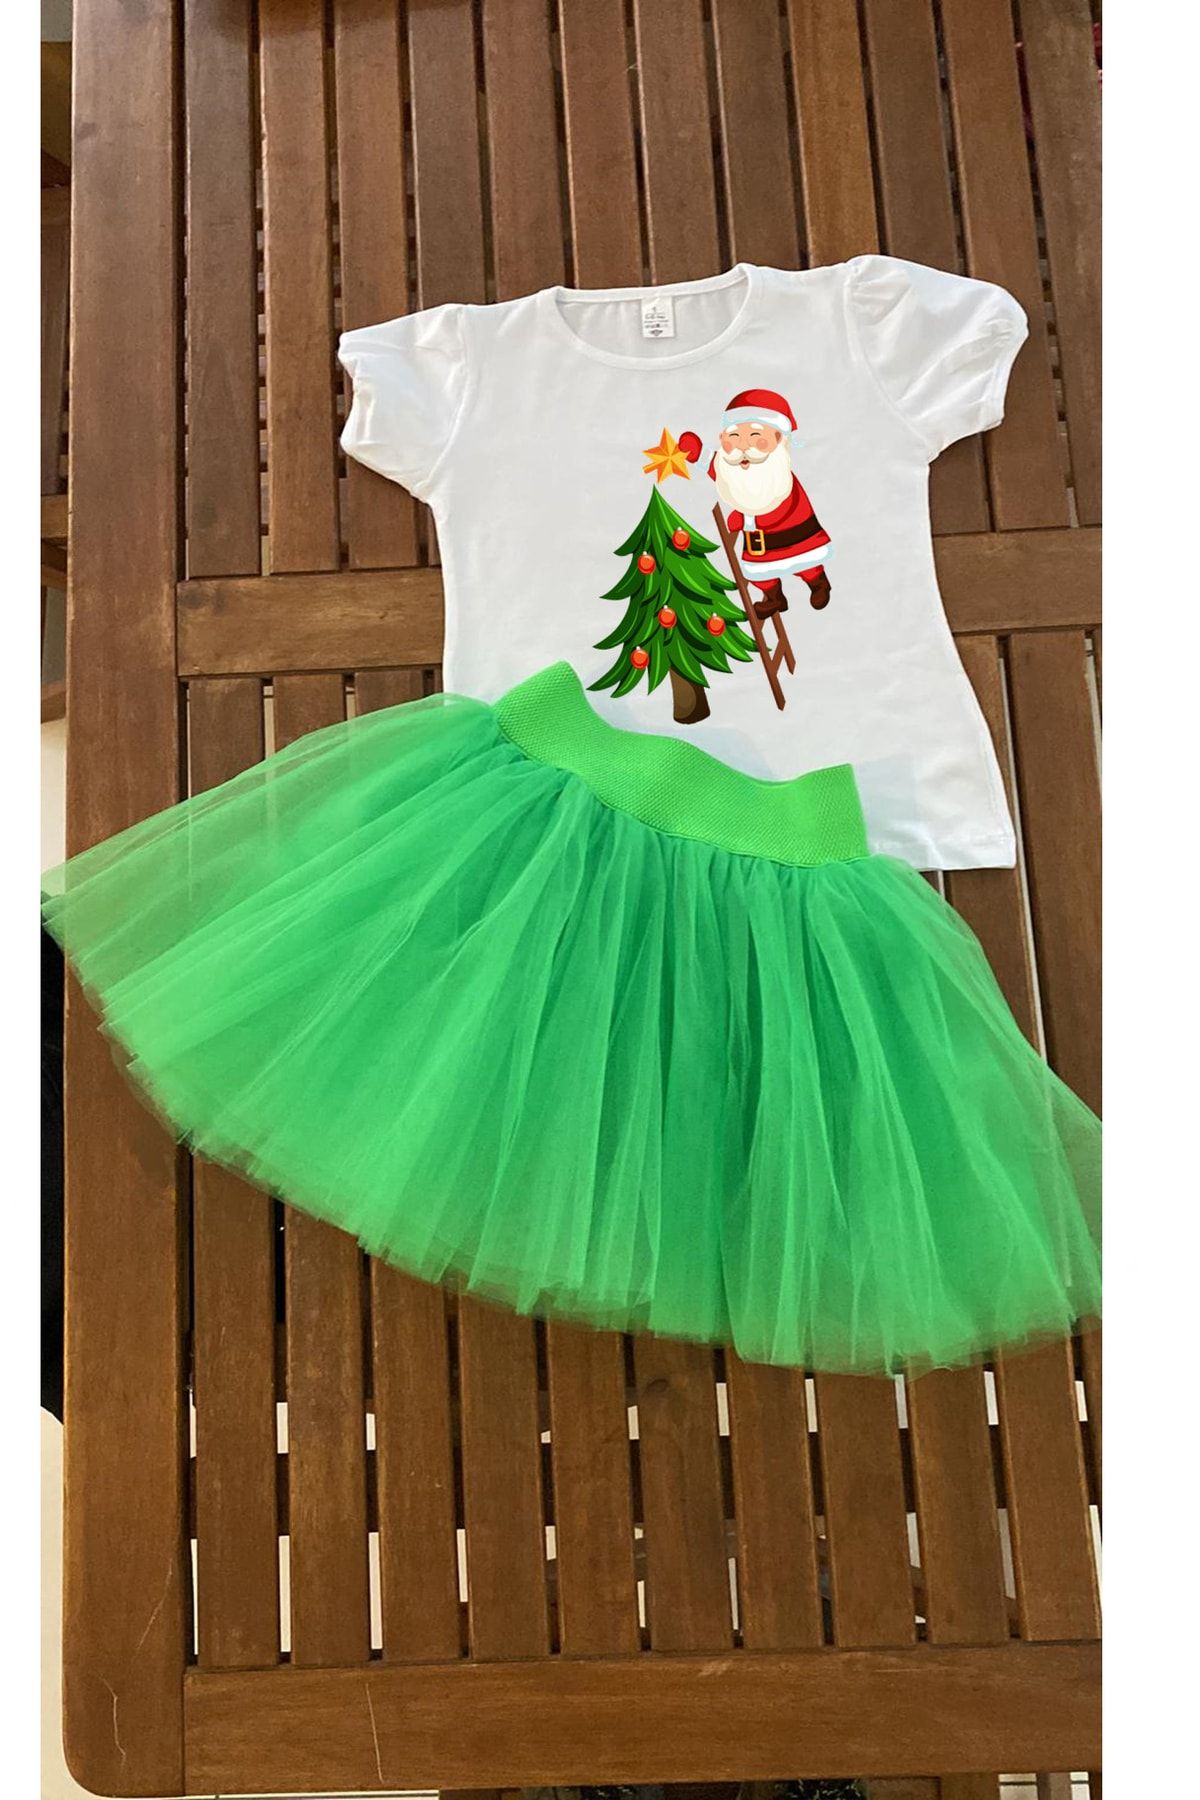 bba new trend Yeşil Tütü Etek Yılbaşı Kostüm Noel Etek Yılbaşı Tişort Kız Çoçuk Yeniyıl Kostüm Kısa Kollu